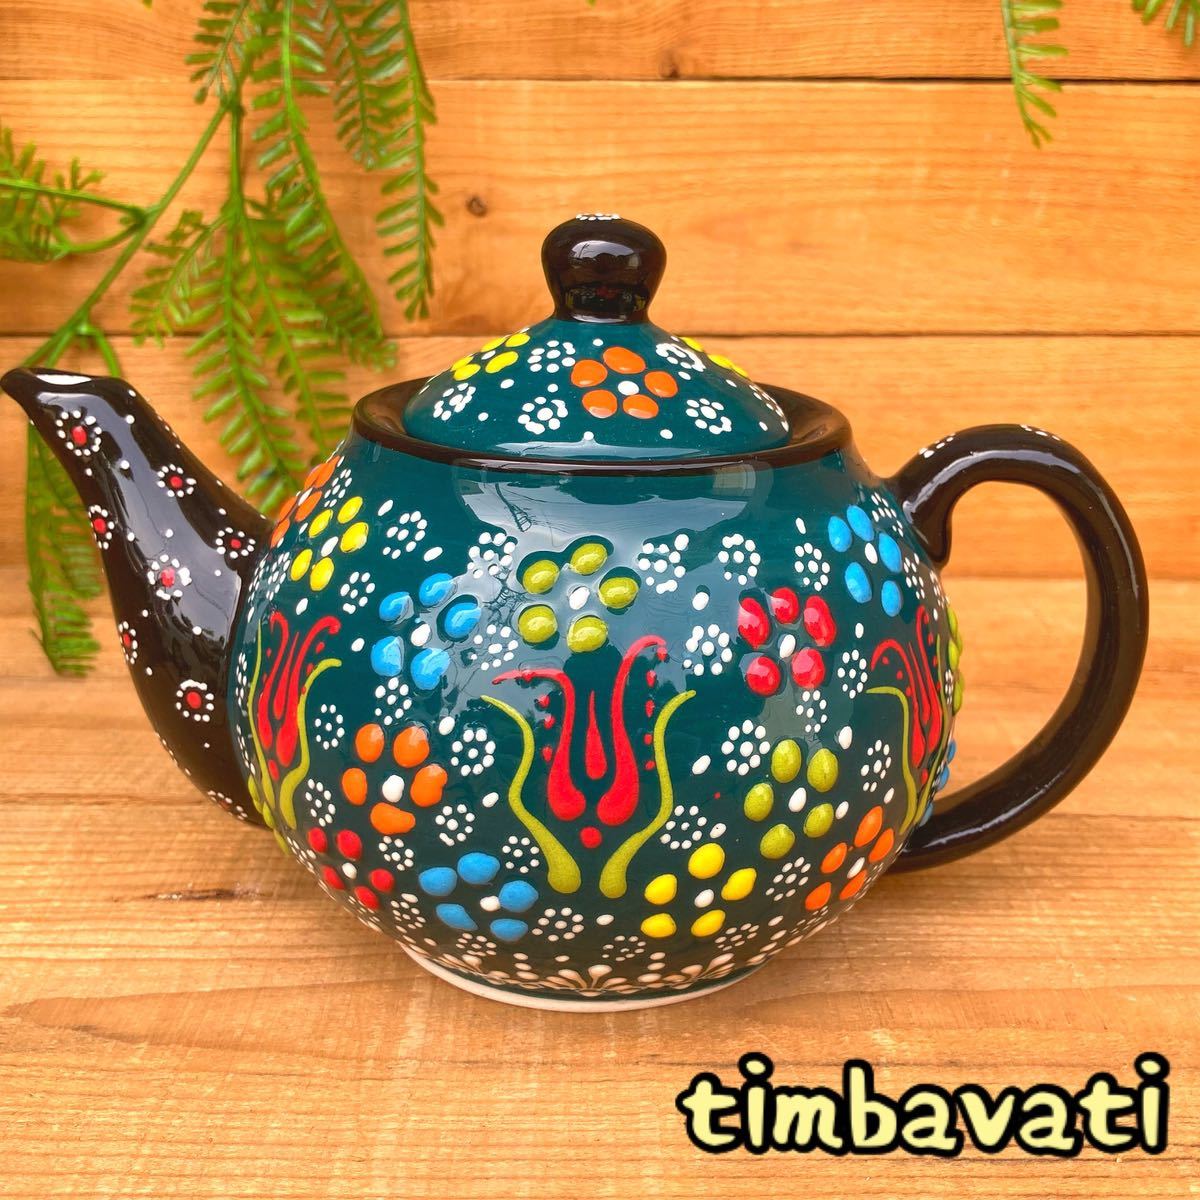 20 cm ☆ Nuevo ☆ Tetera de cerámica turca * Verde oscuro * Cerámica Kyutahya hecha a mano [Envío gratis con condiciones] 117, vajilla occidental, utensilios de té, maceta